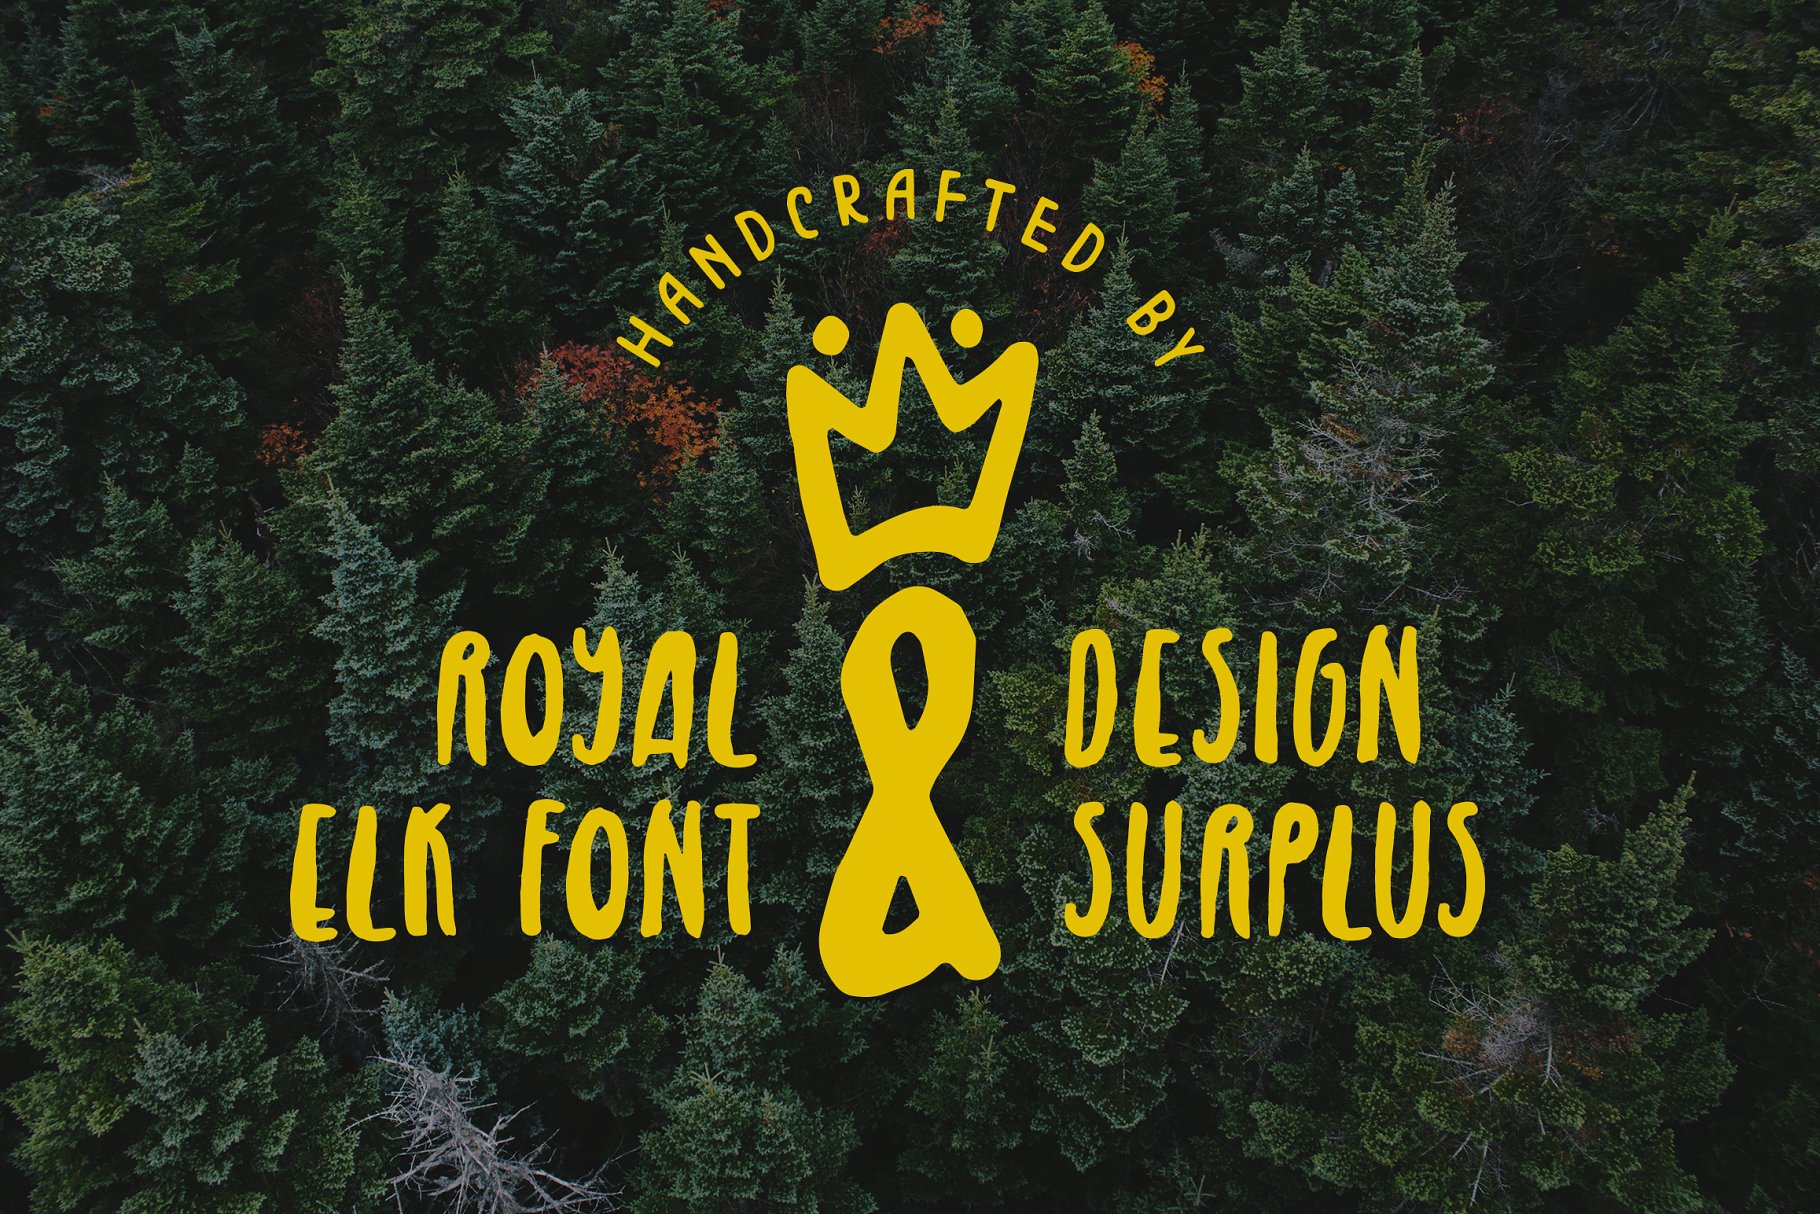 无衬线英文书法字体 Royal Elk Font插图(6)